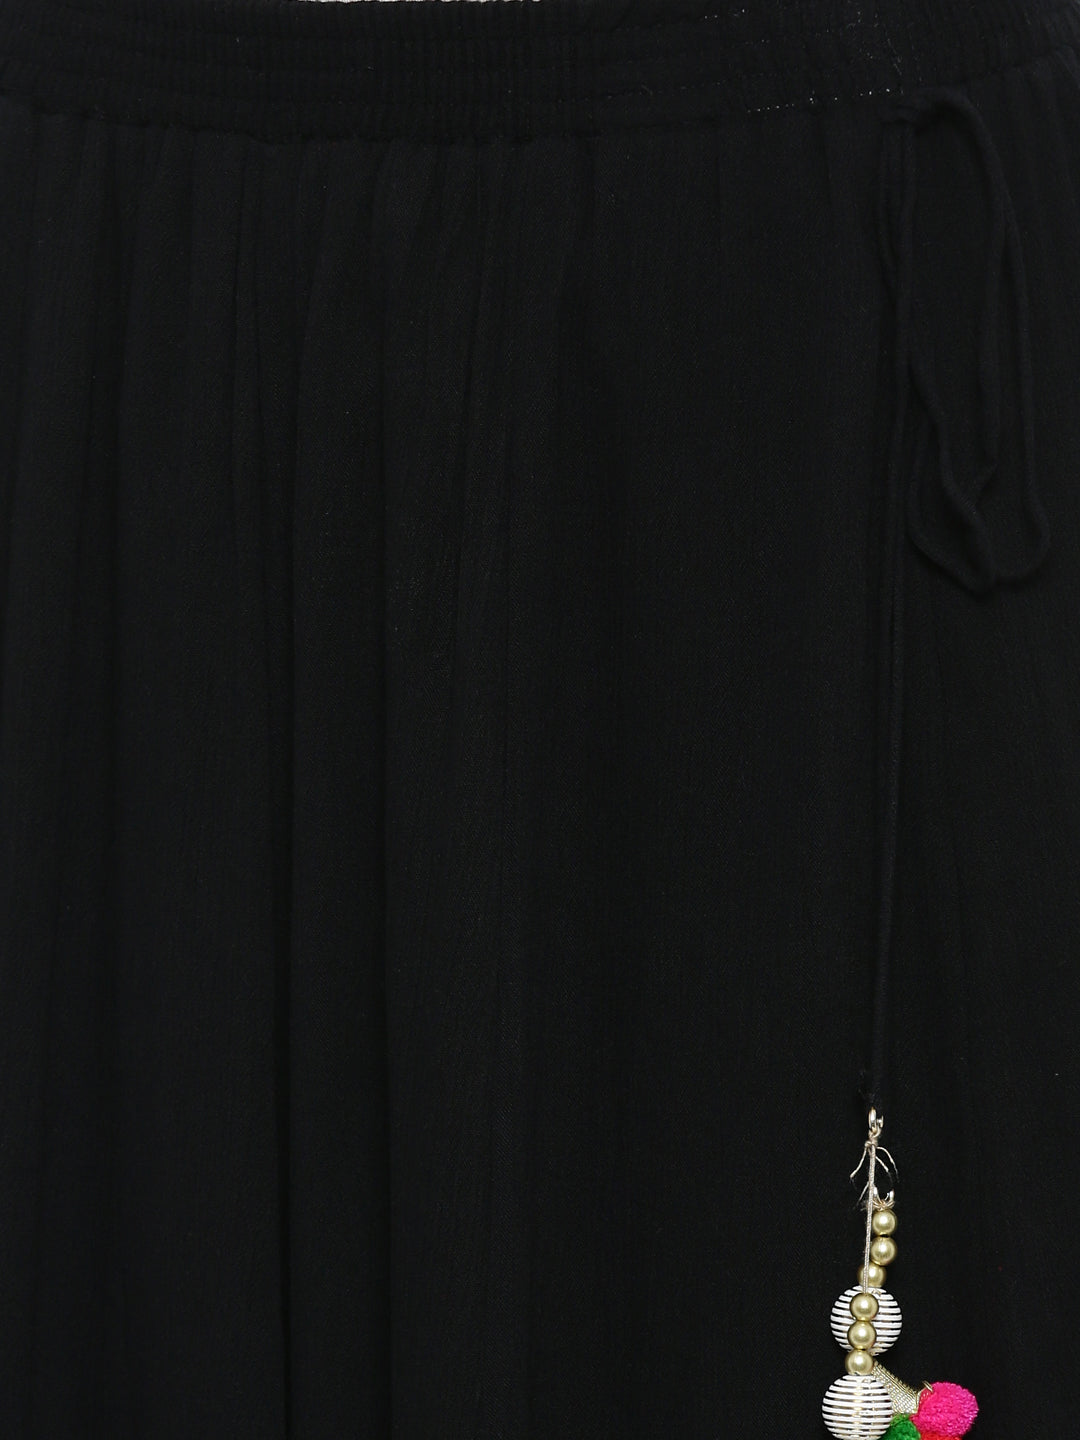 De Moza Black Solid Flared Skirt - De Moza (11505798158)